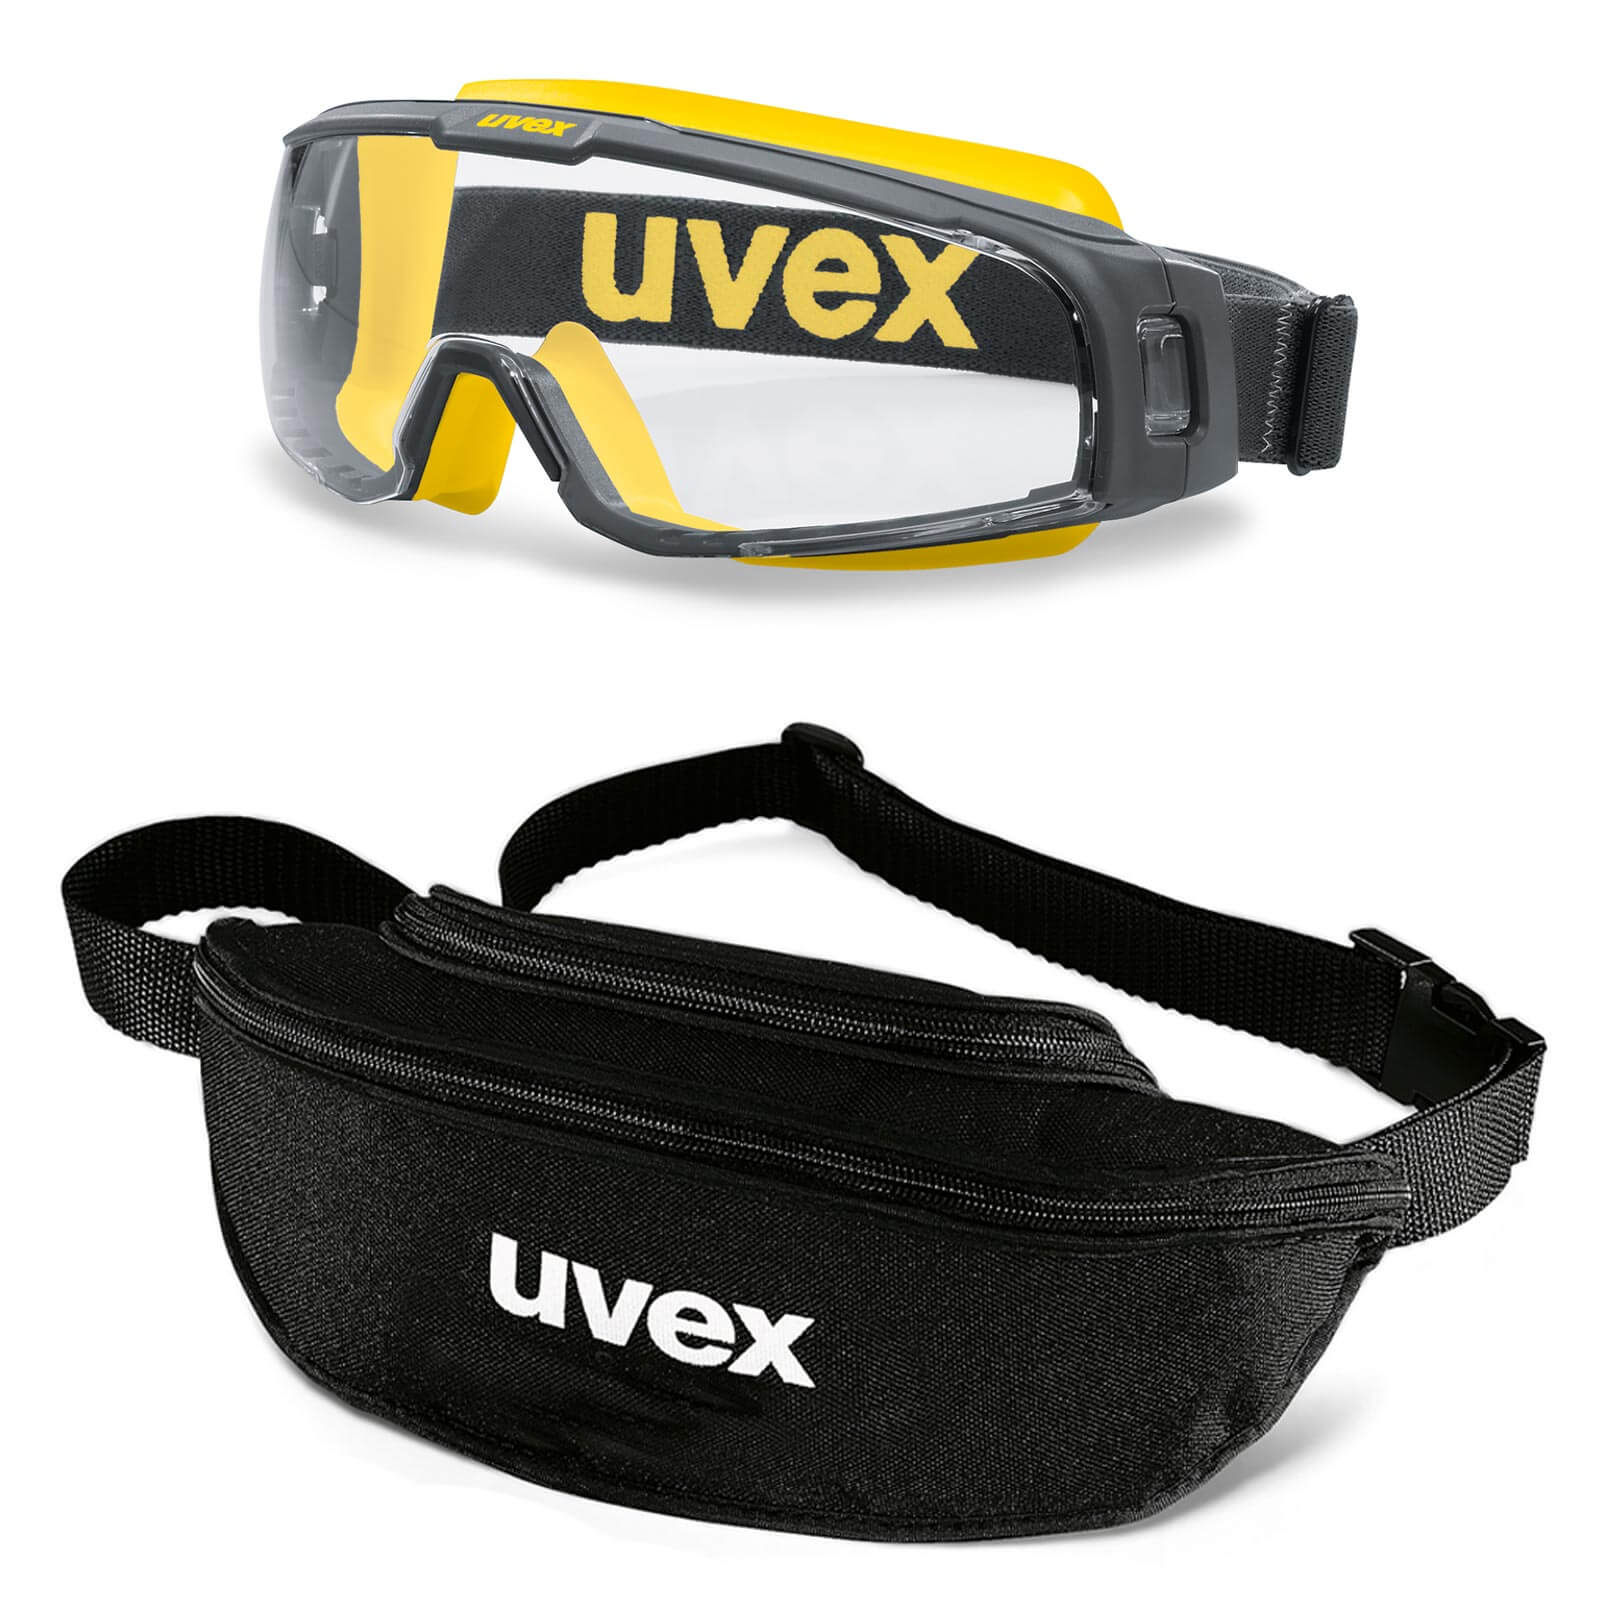 UVEX Vollsichtbrille Vollsicht-Schutzbrille u-sonic 9308 - Set mit Textil-Etui Farbe:grau-gelb / klar von Uvex